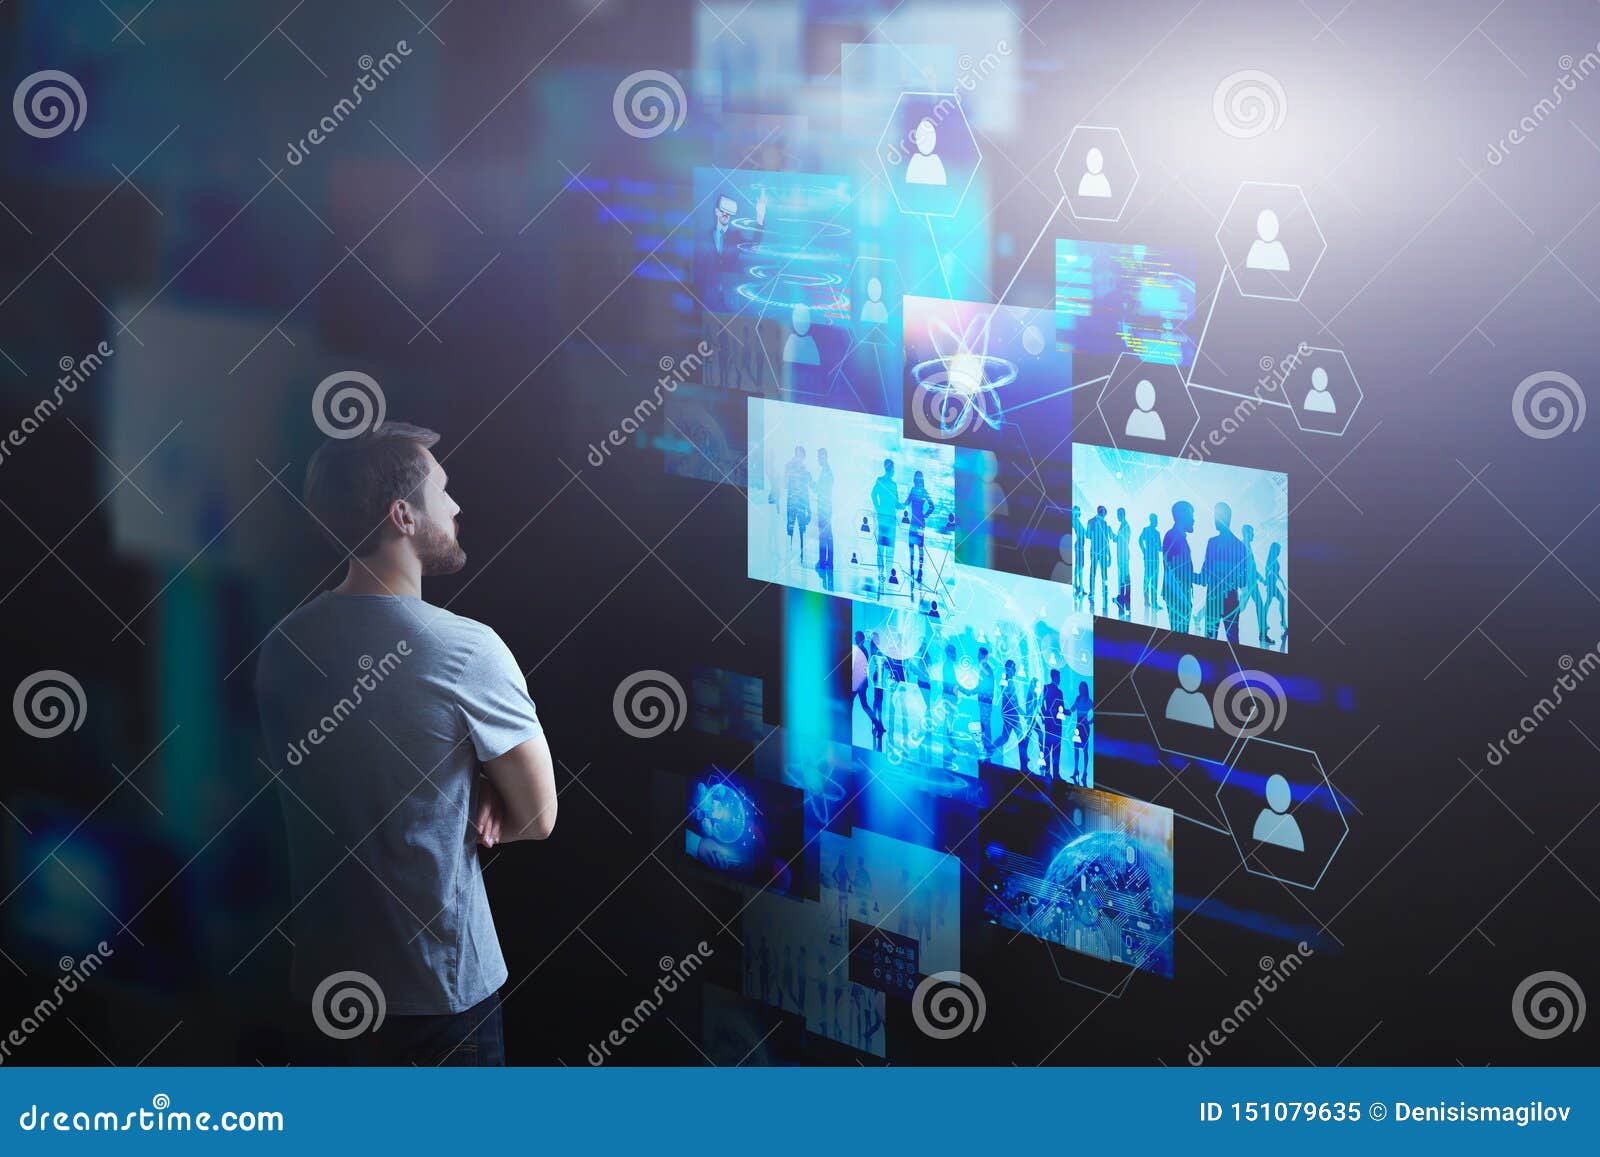 startup man looking at virtual screens